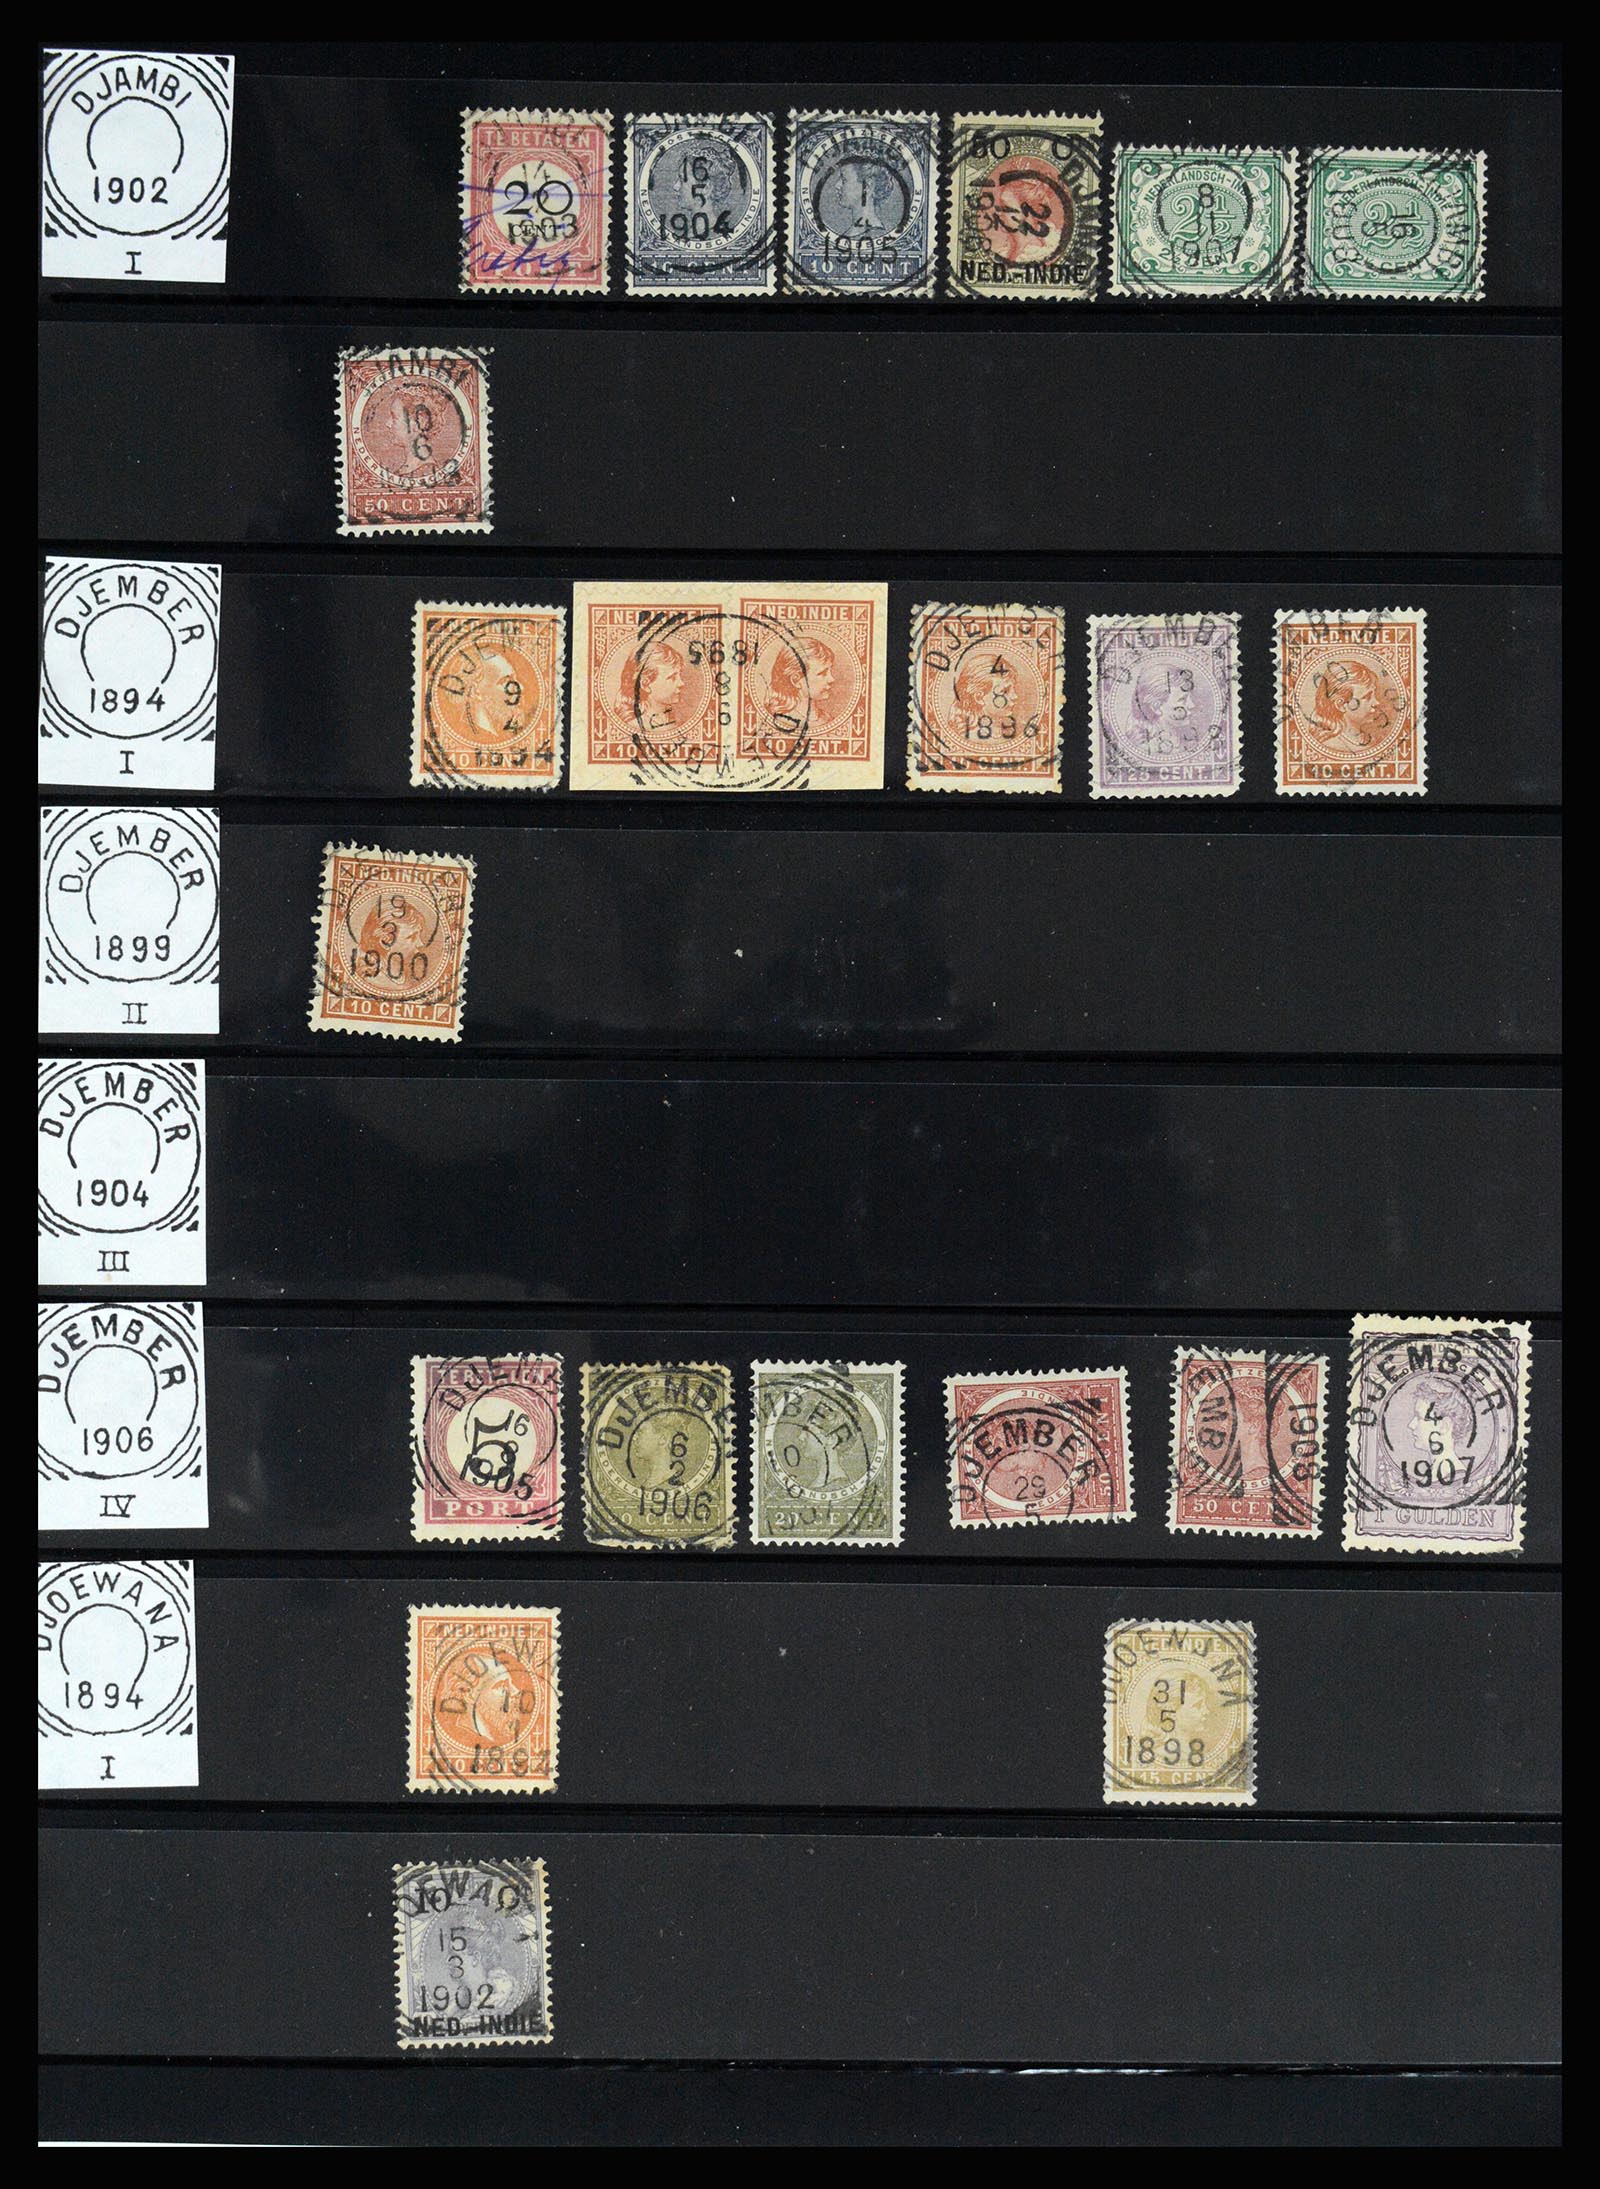 36512 116 - Stamp collection 36512 Nederlands Indië stempels 1872-1930.